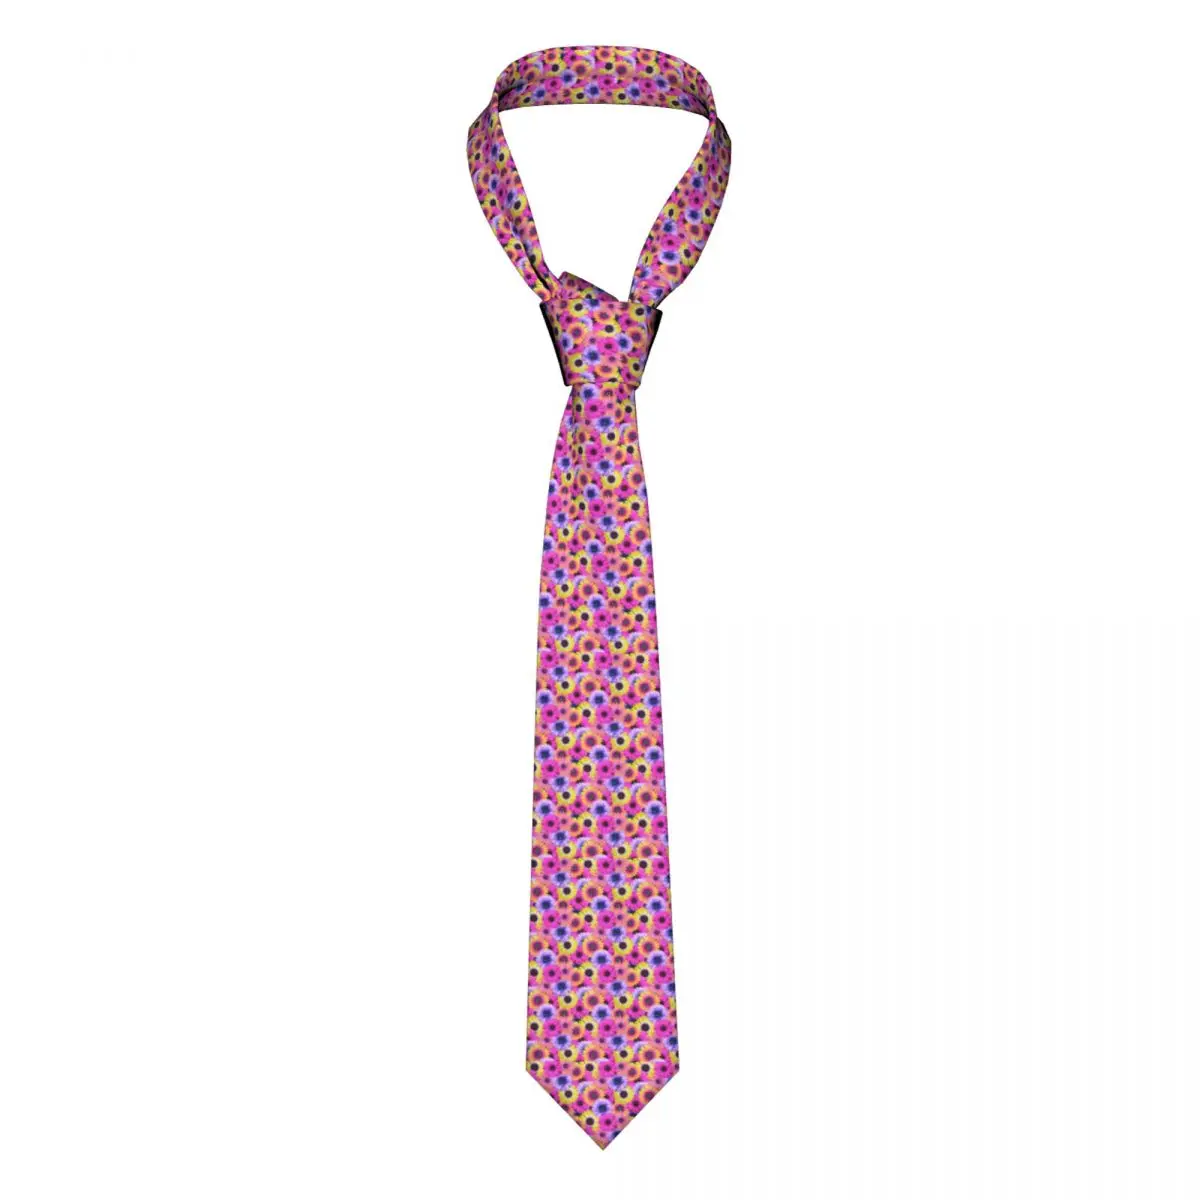 

Галстук с африканскими маргаритками розовый фиолетовый цветочный узор 8 см галстуки для шеи подарок для свадьбы для мужчин галстук для блуз...